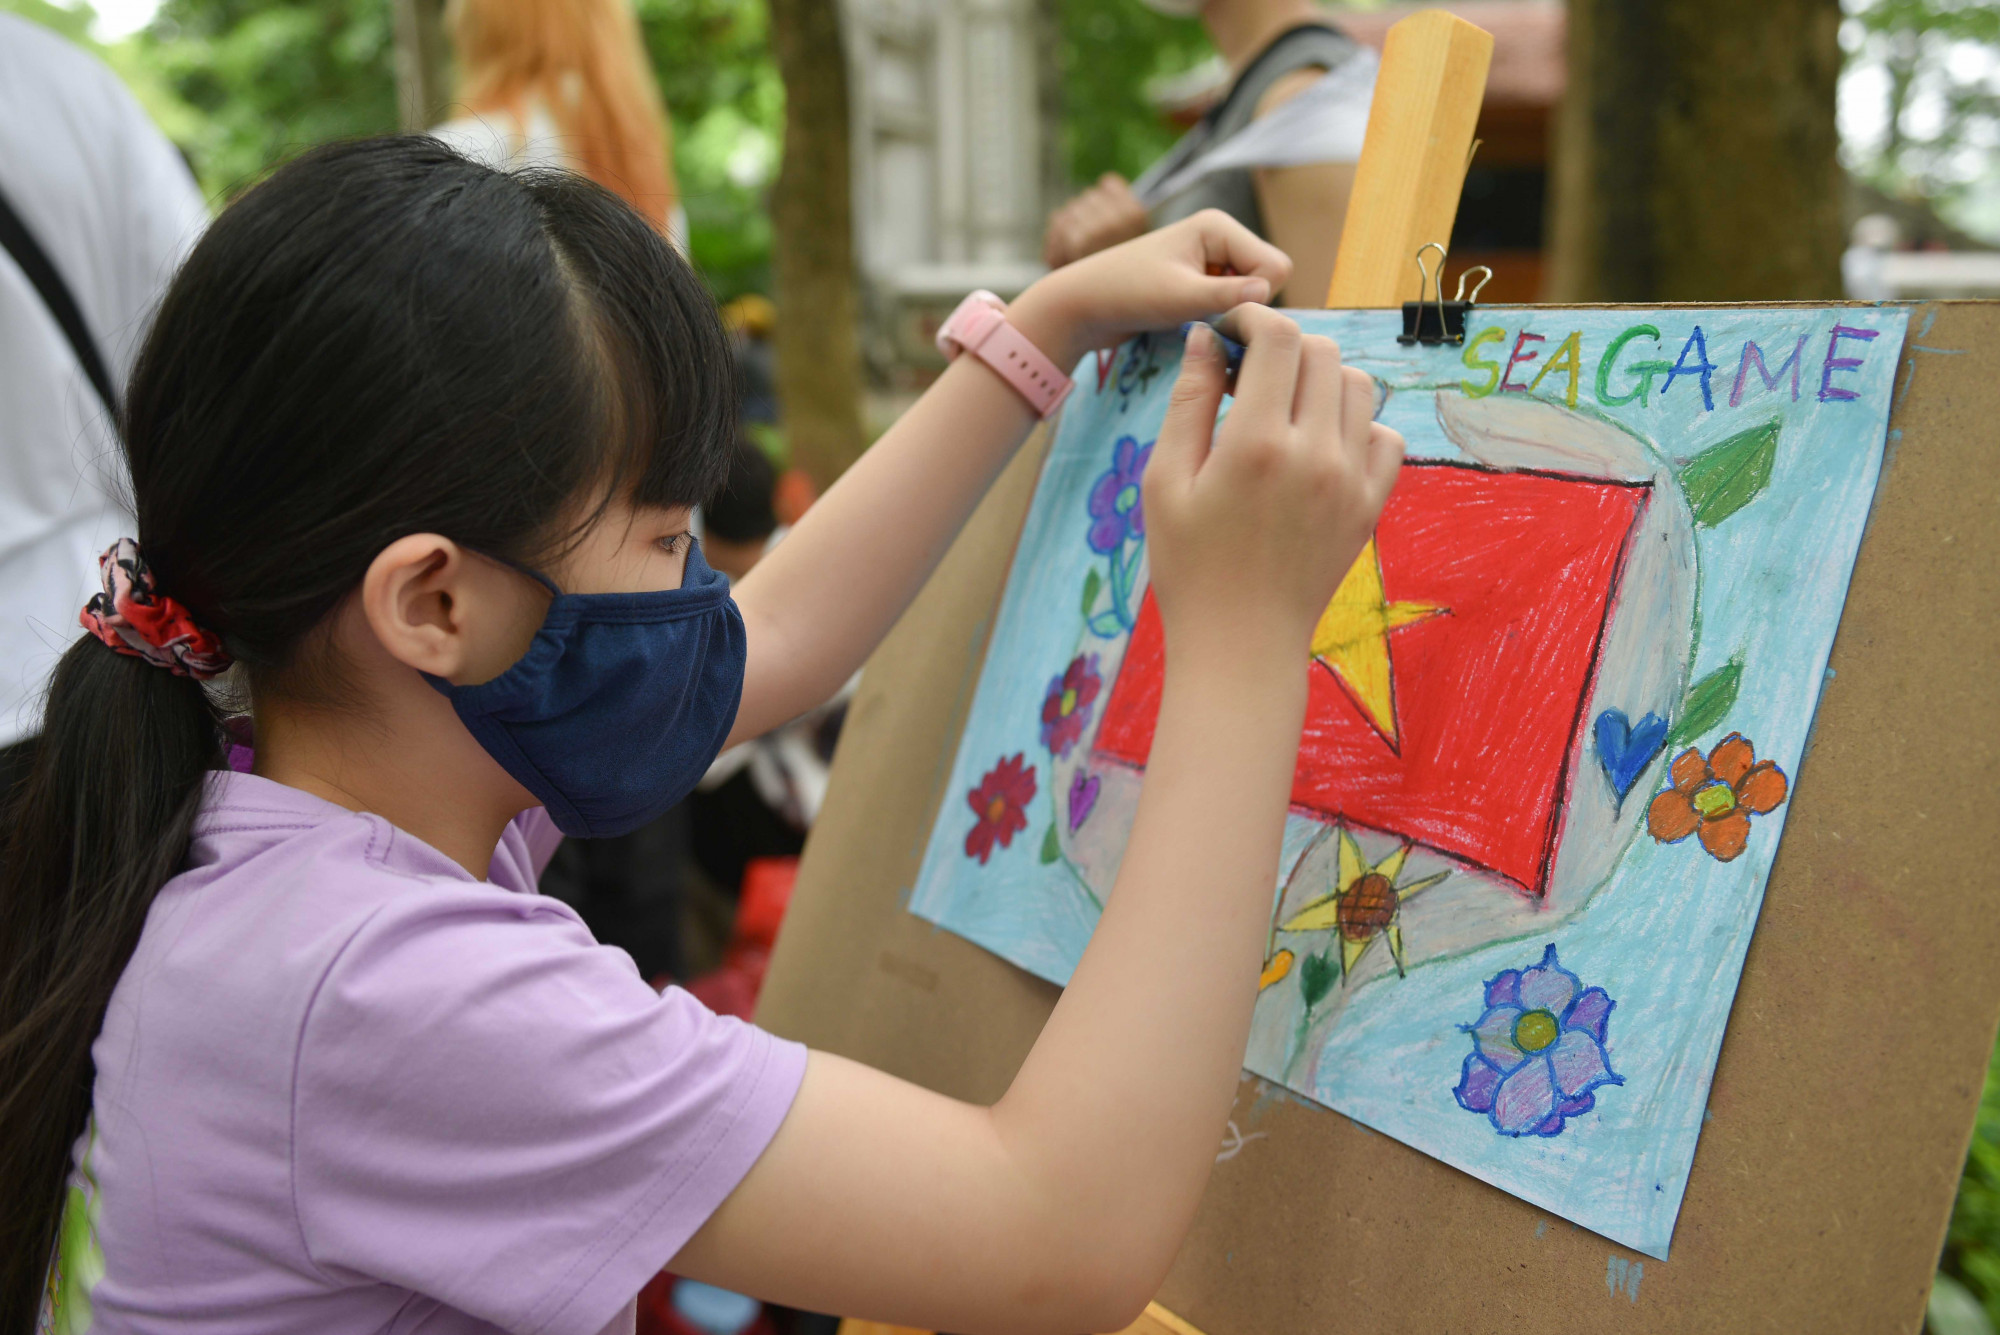 31 trẻ em và 31 sinh viên vẽ tranh khát vọng Đông Nam Á - vì 1 Đông Nam Á thịnh vượng.